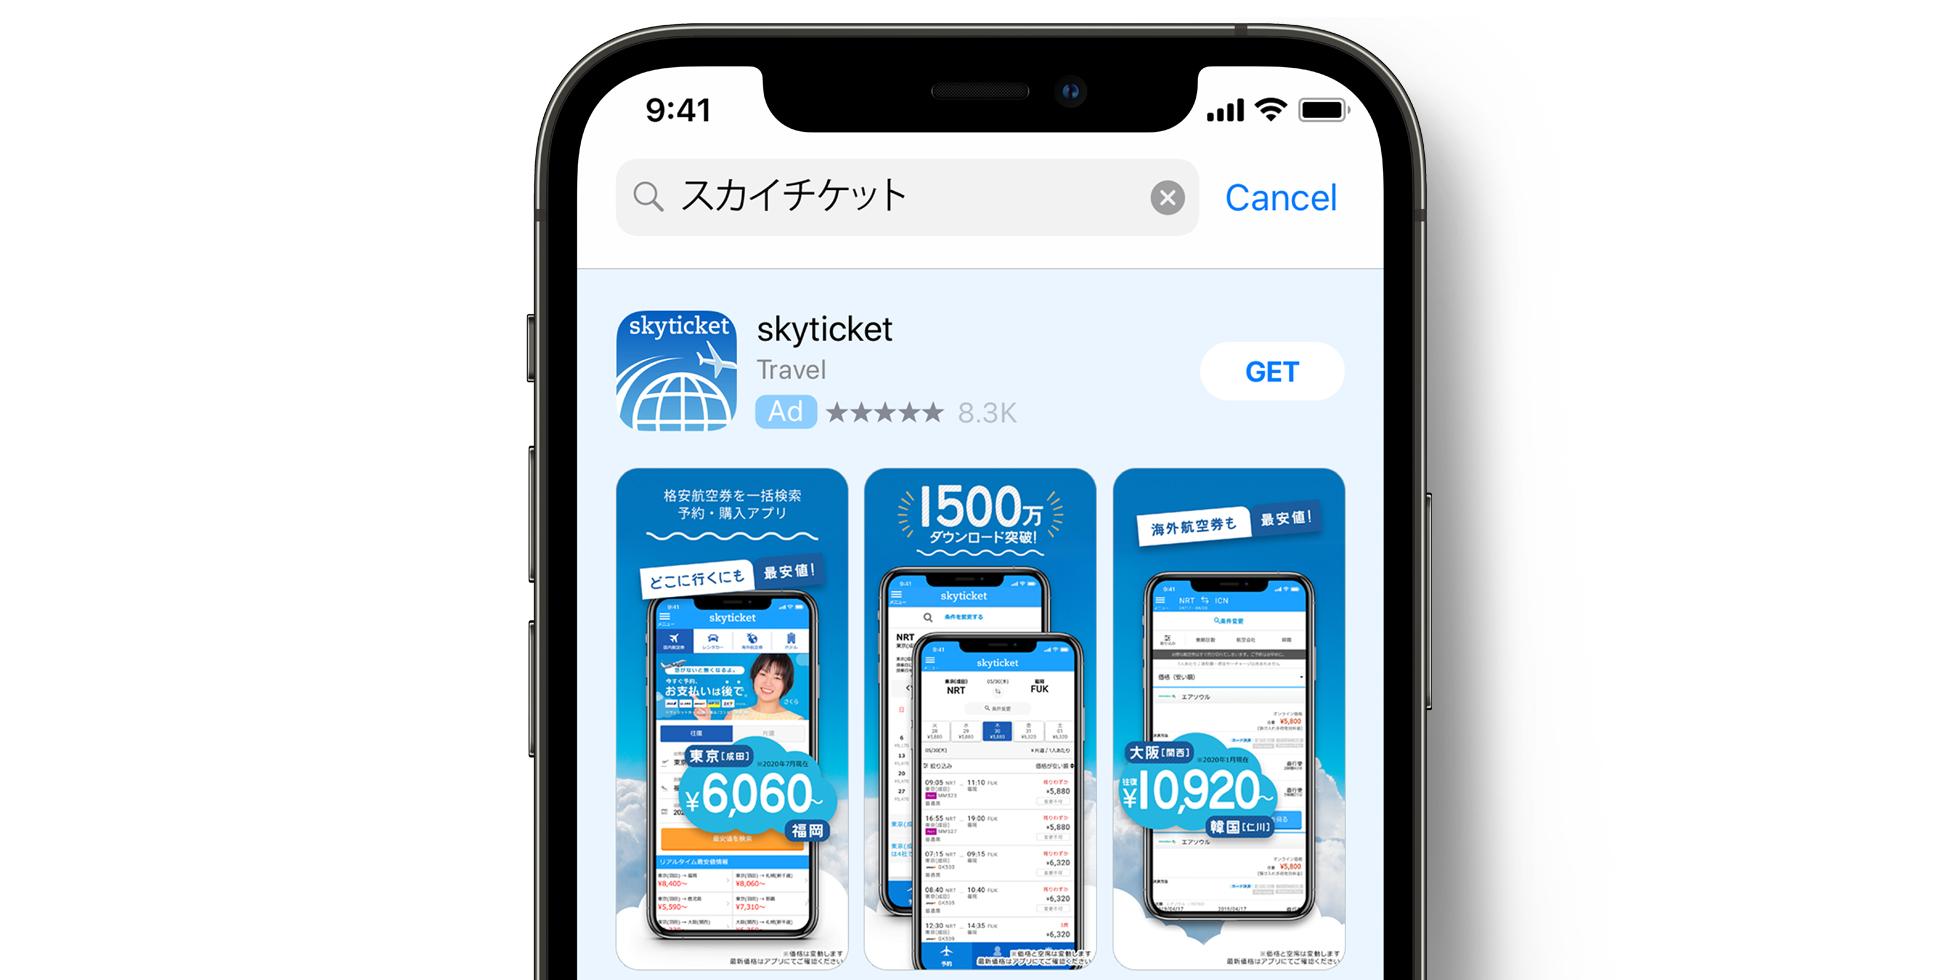 Anuncio de skyticket en el App Store